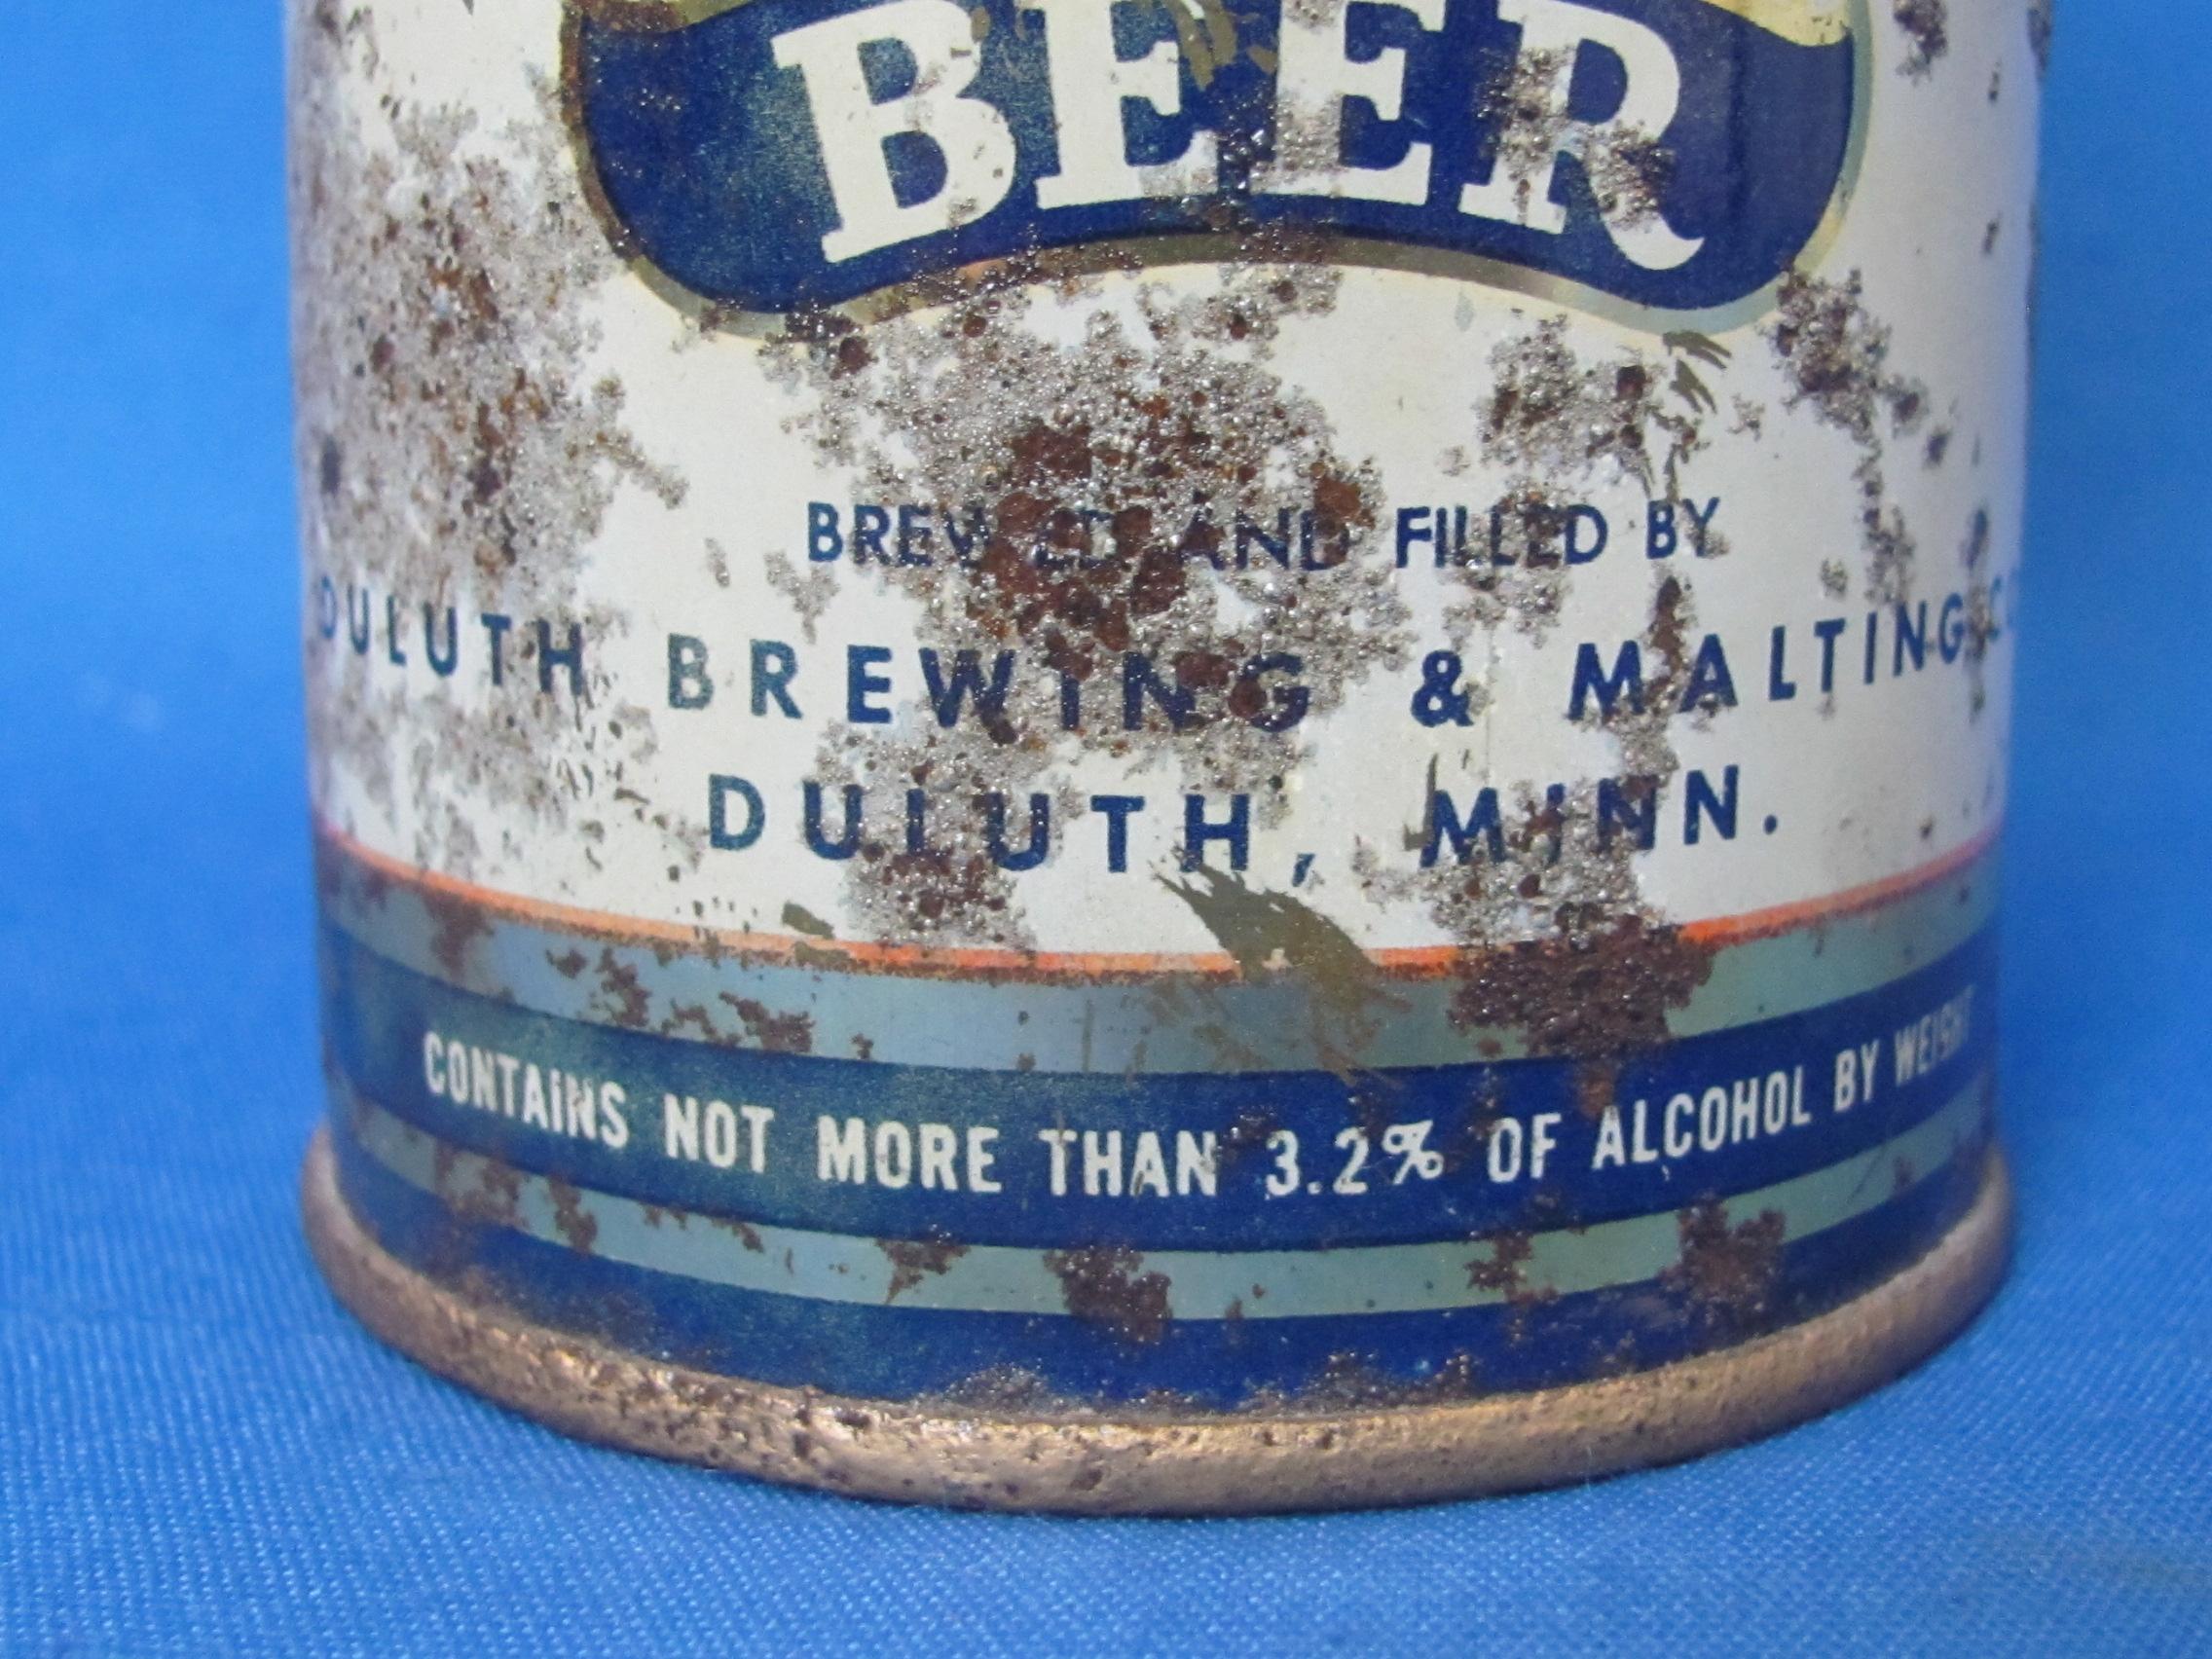 Steel Cone Top Beer Can “Royal Bohemian Beer” - Duluth, Minn.